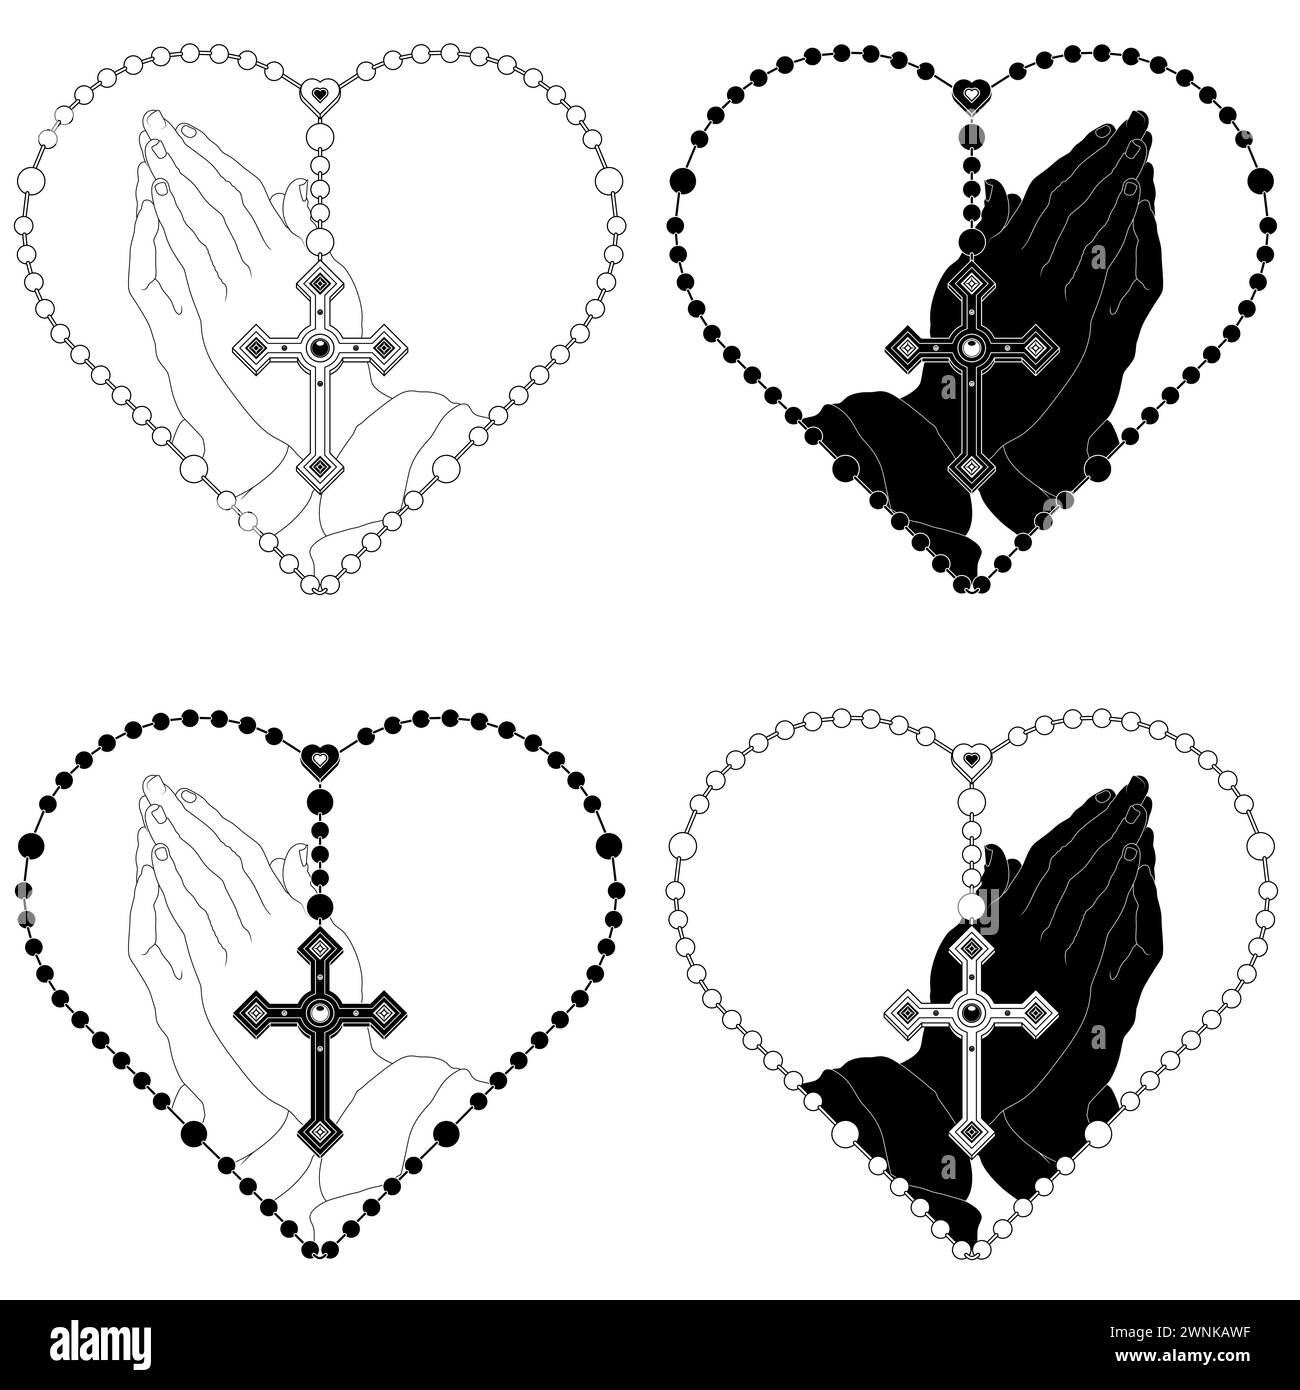 Dessin vectoriel des mains de prière avec le rosaire en forme de coeur, rosaire avec la croix chrétienne, symbole de la religion catholique Illustration de Vecteur